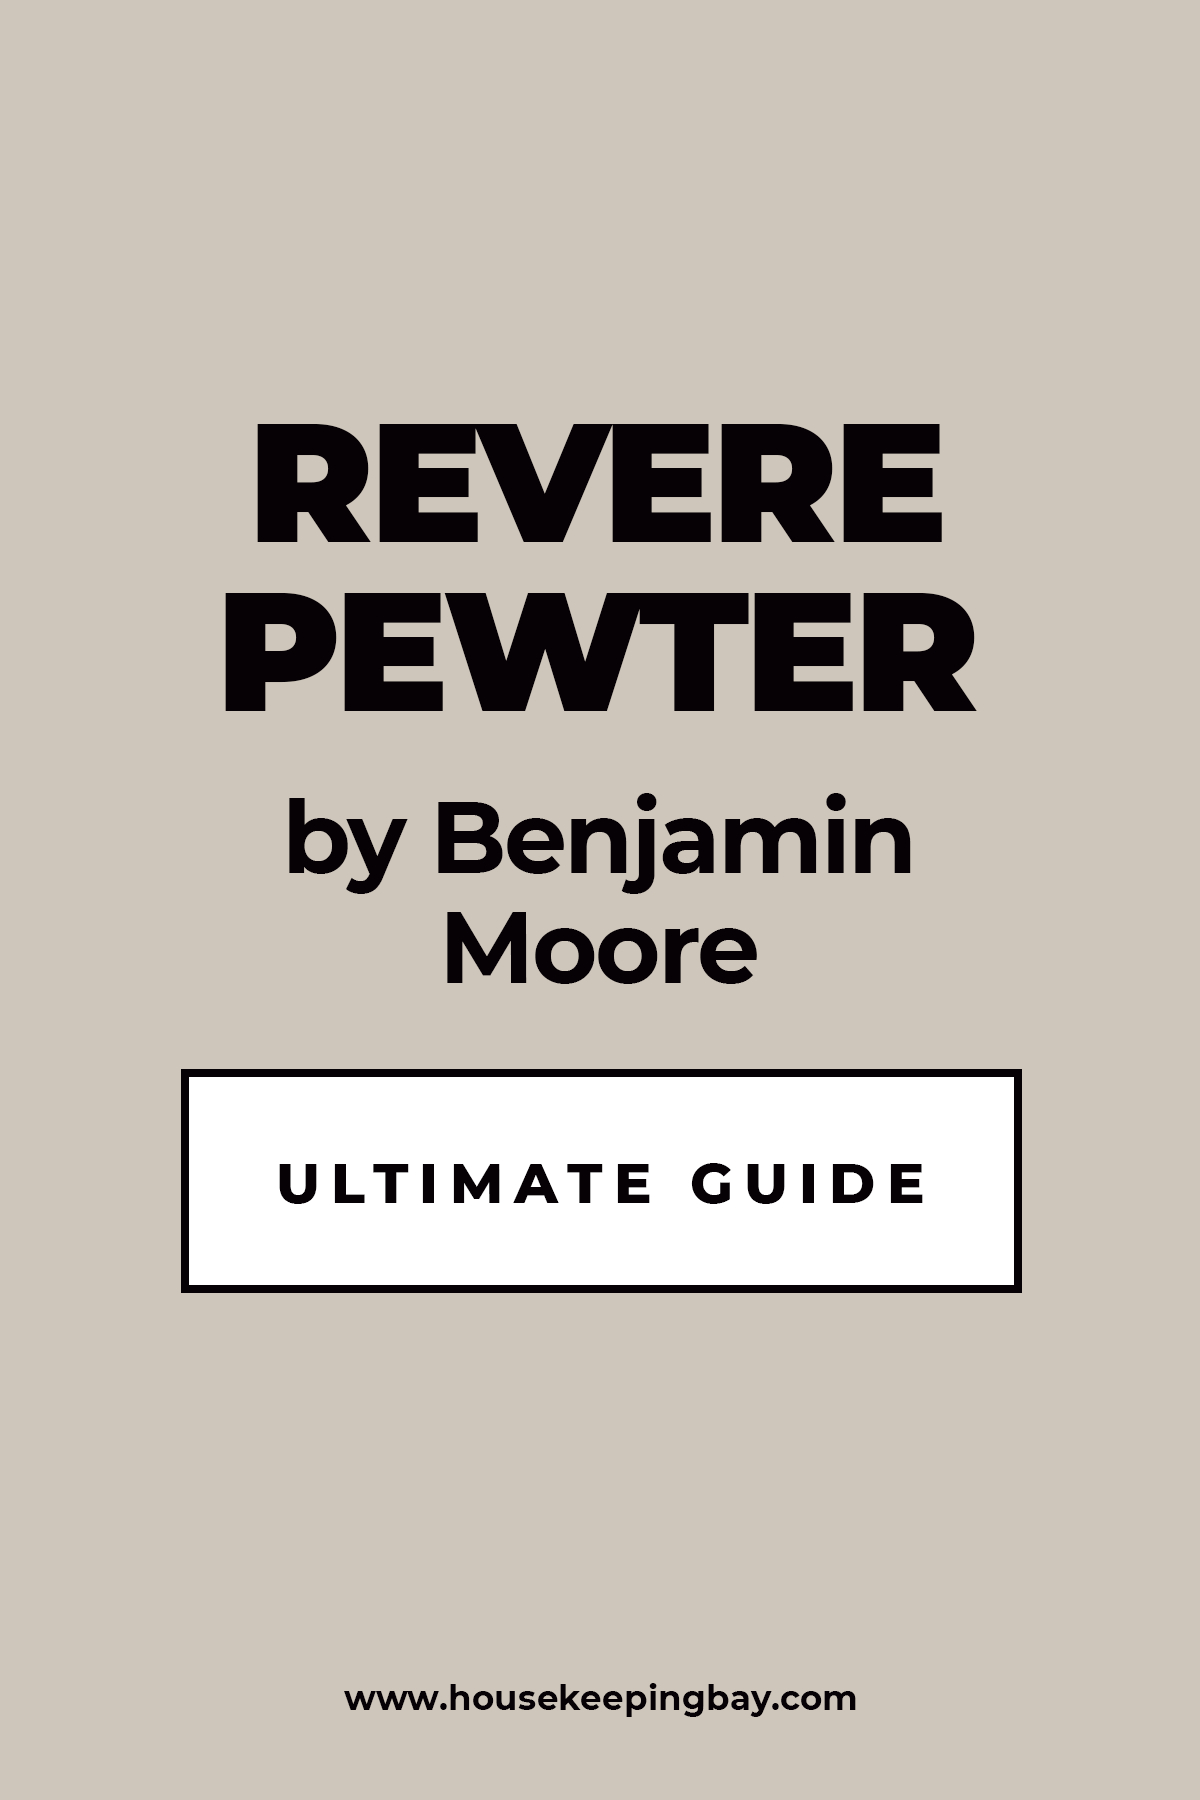 Revere Pewter by Benjamin Moore